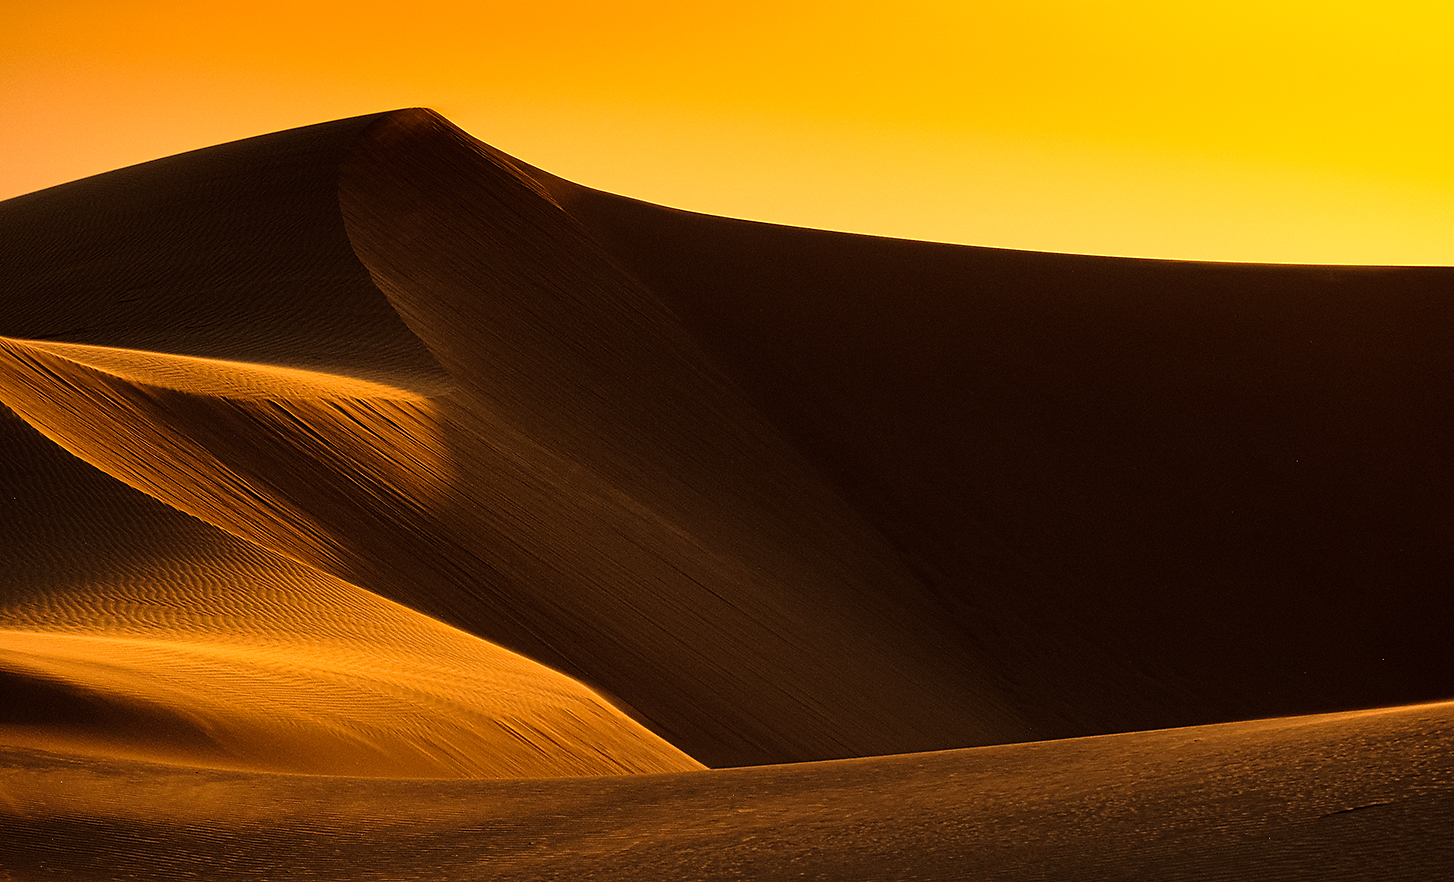 Screenshot showing sand dunes in a desert